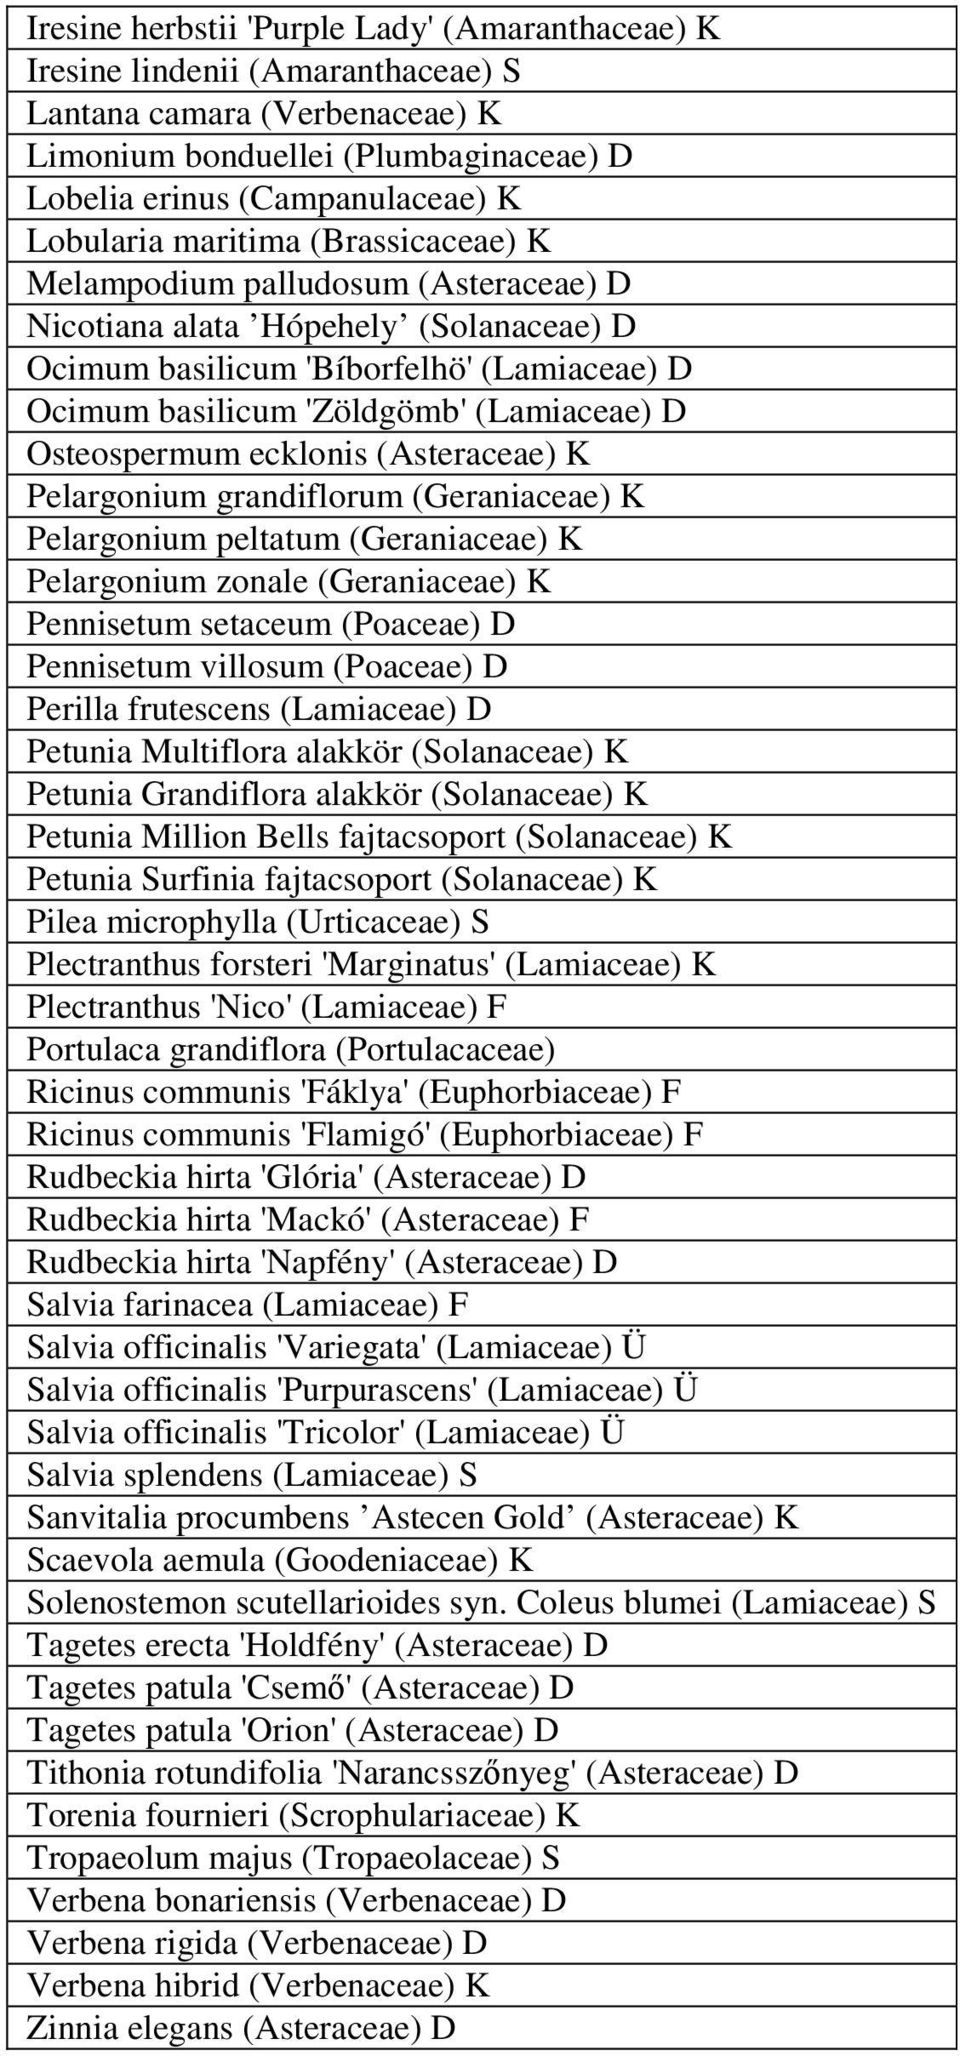 Osteospermum ecklonis (Asteraceae) K Pelargonium grandiflorum (Geraniaceae) K Pelargonium peltatum (Geraniaceae) K Pelargonium zonale (Geraniaceae) K Pennisetum setaceum (Poaceae) D Pennisetum